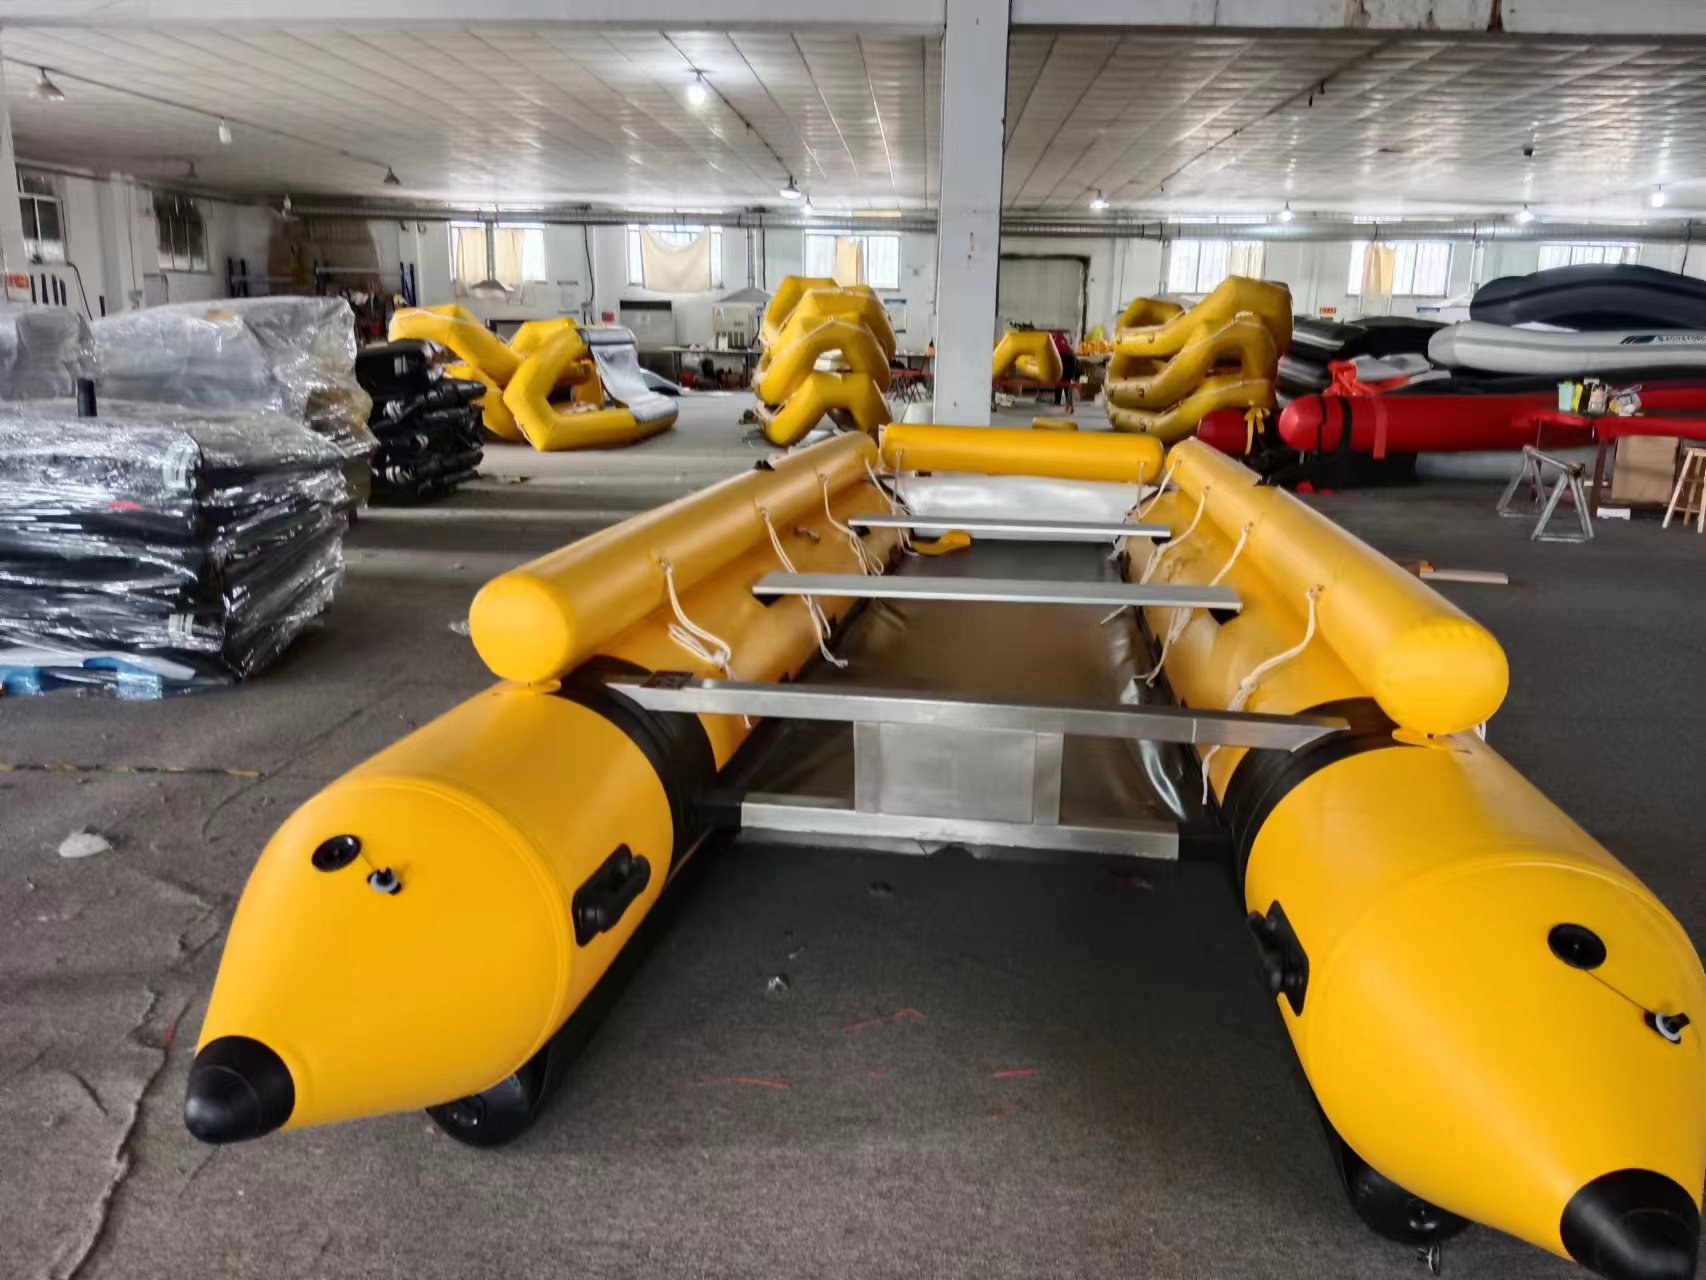  Aluminium Floor Catamaran Speed Inflatable Boat 